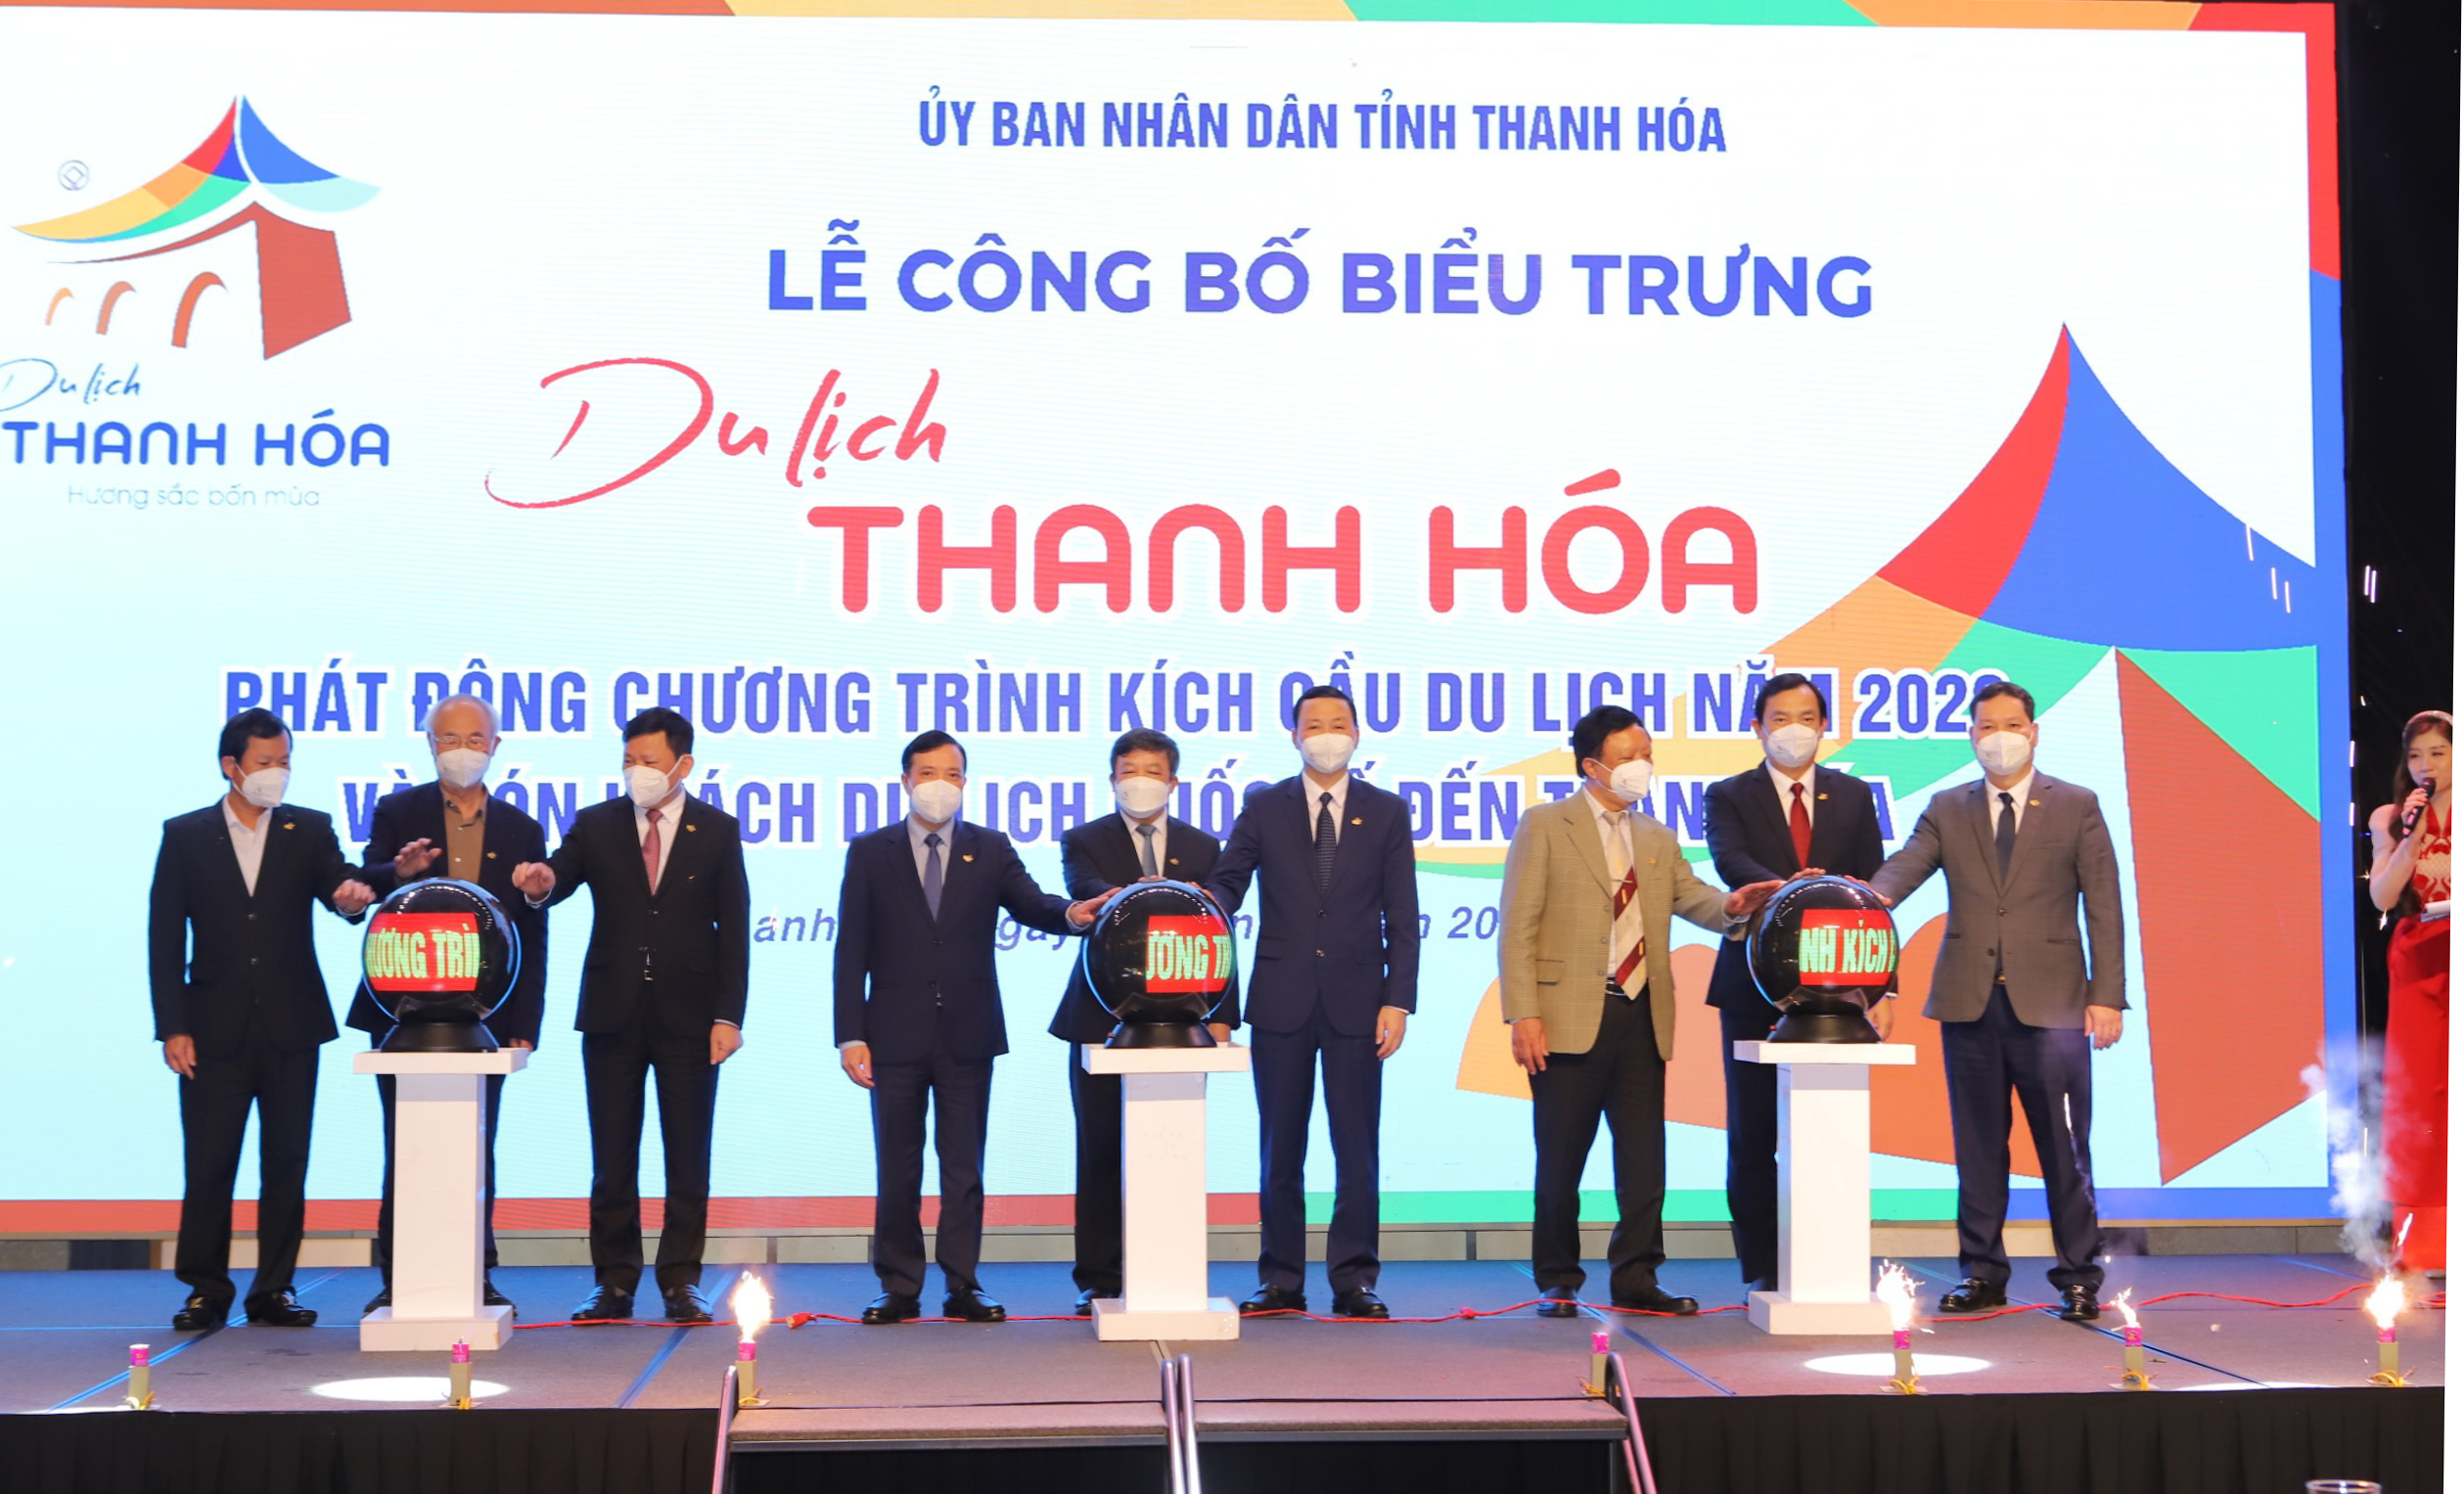 Thứ trưởng Đoàn Văn Việt dự lễ phát động Chương trình kích cầu du lịch năm 2022 của Thanh Hóa